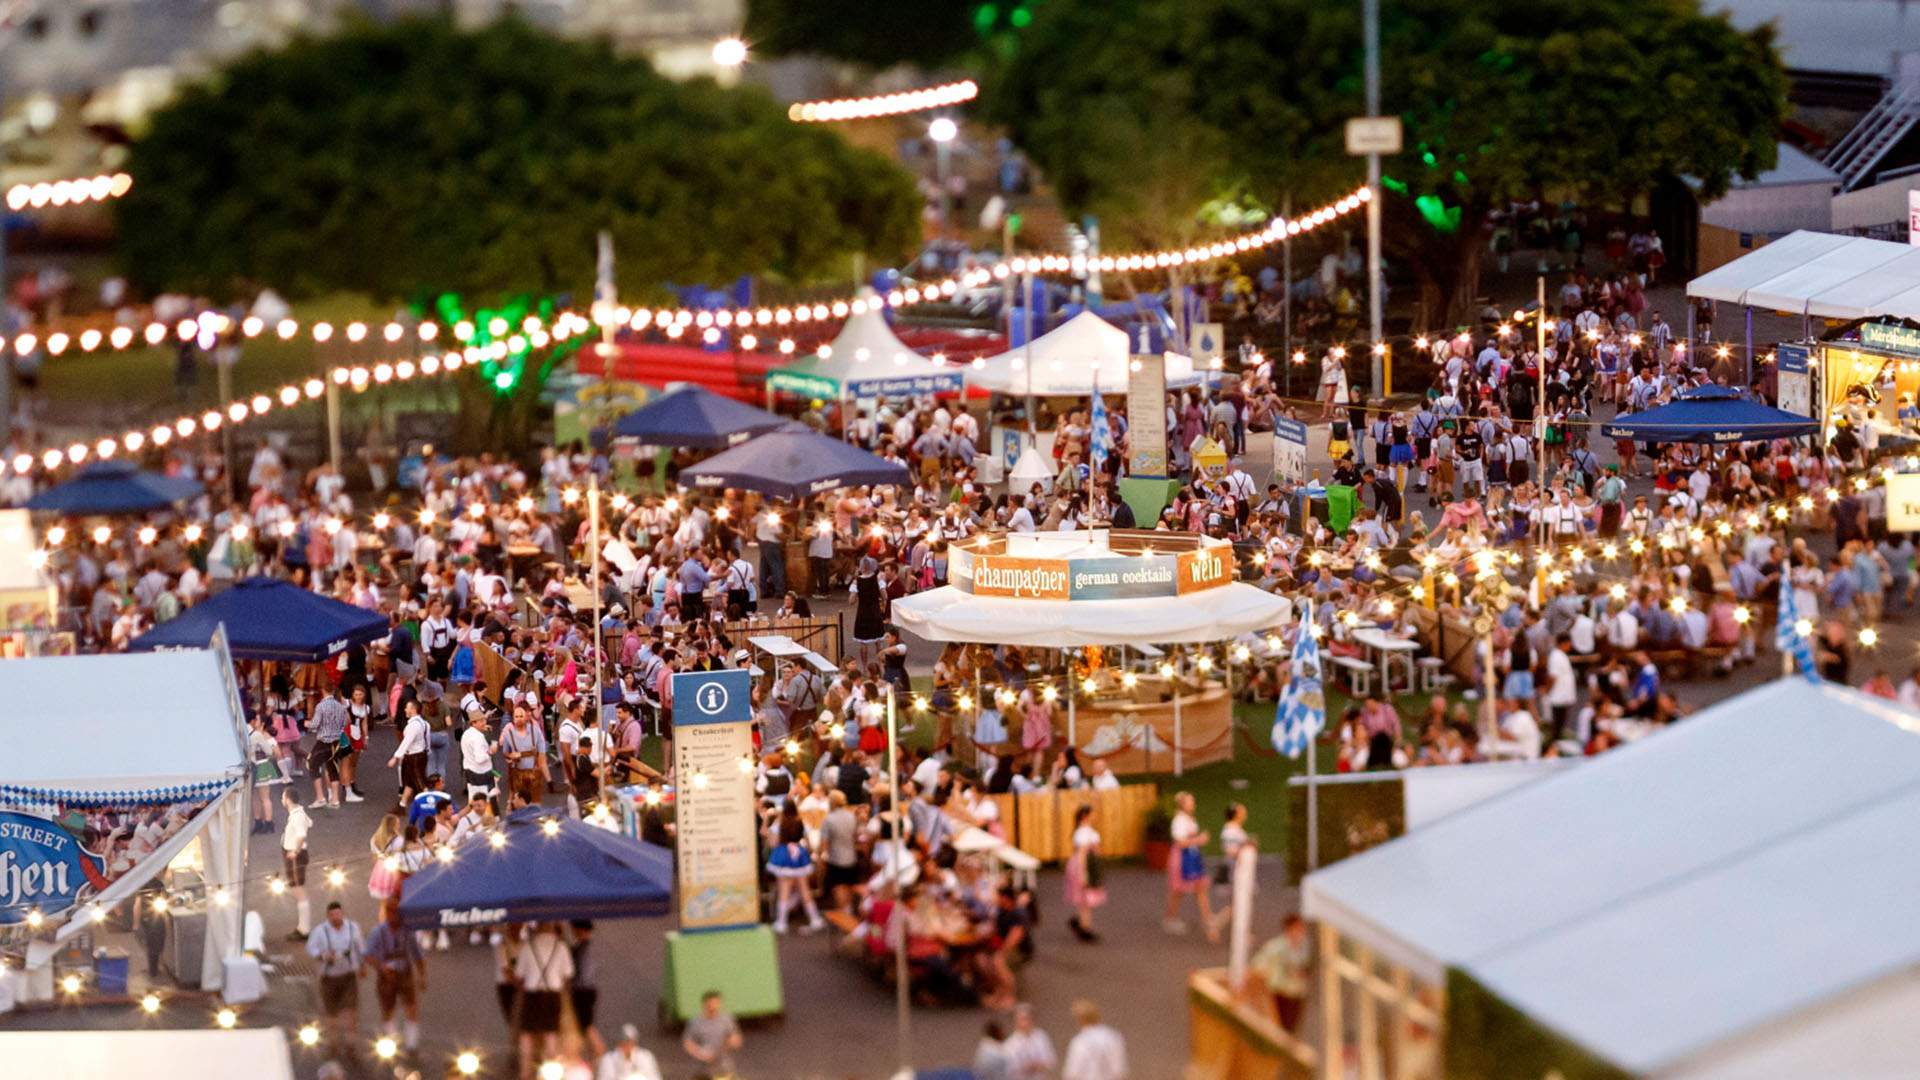 Oktoberfest Brisbane Is Saying Auf Wiedersehen After 15 Years of Steins, Schnitties and German Celebrations